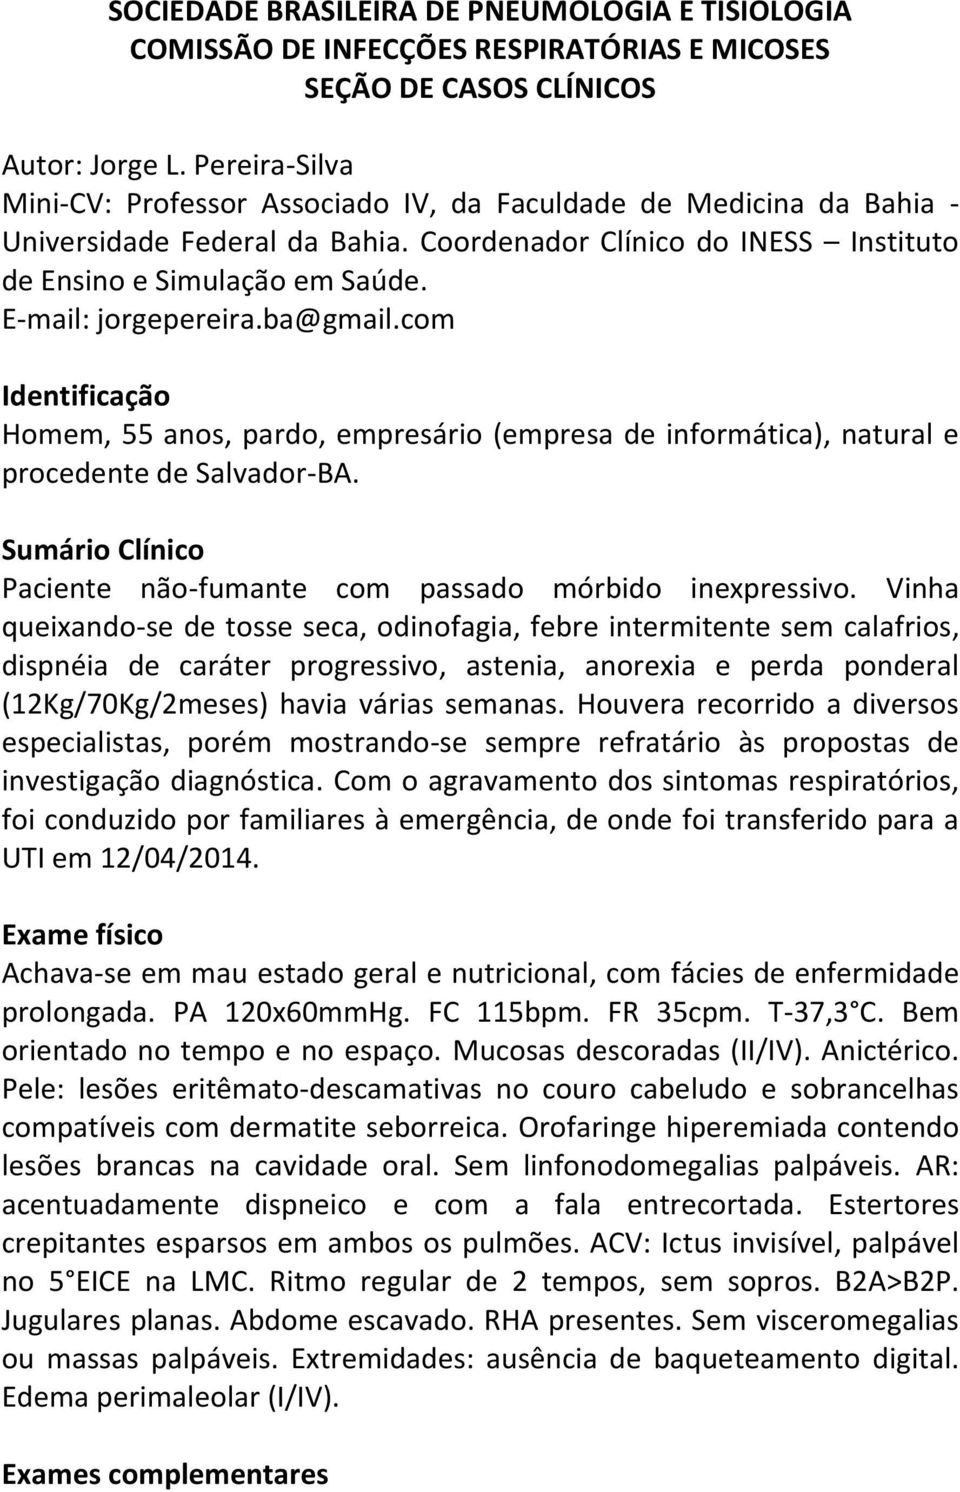 E-mail: jorgepereira.ba@gmail.com Identificação Homem, 55 anos, pardo, empresário (empresa de informática), natural e procedente de Salvador-BA.